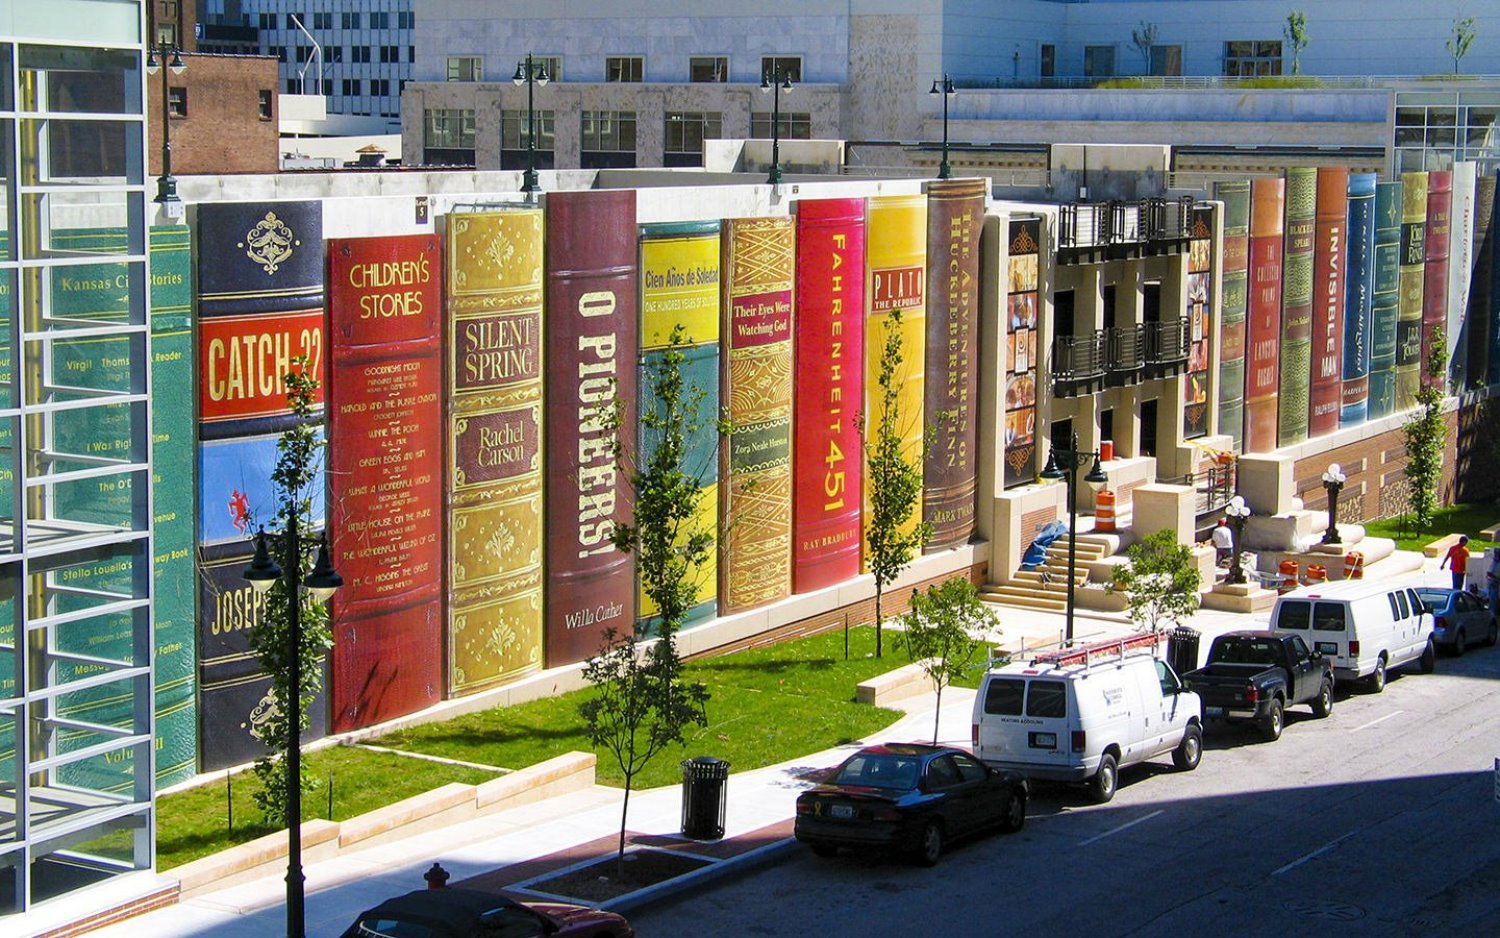 Kansas City Public Library de JE Dunn Construction